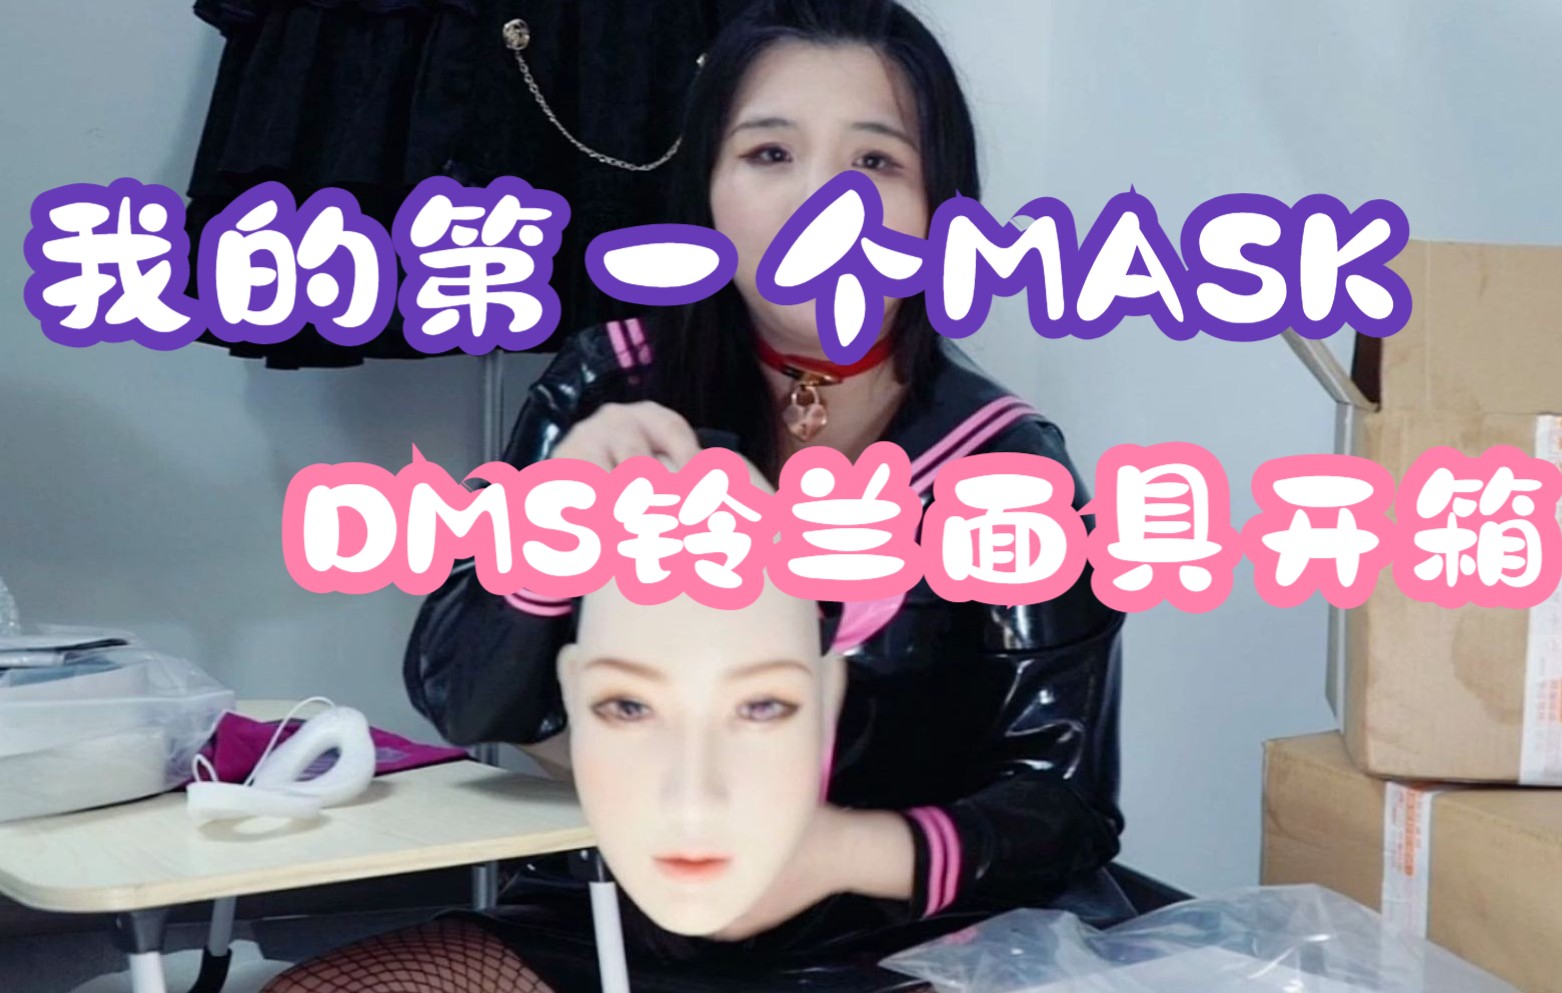 dreammask面具图片